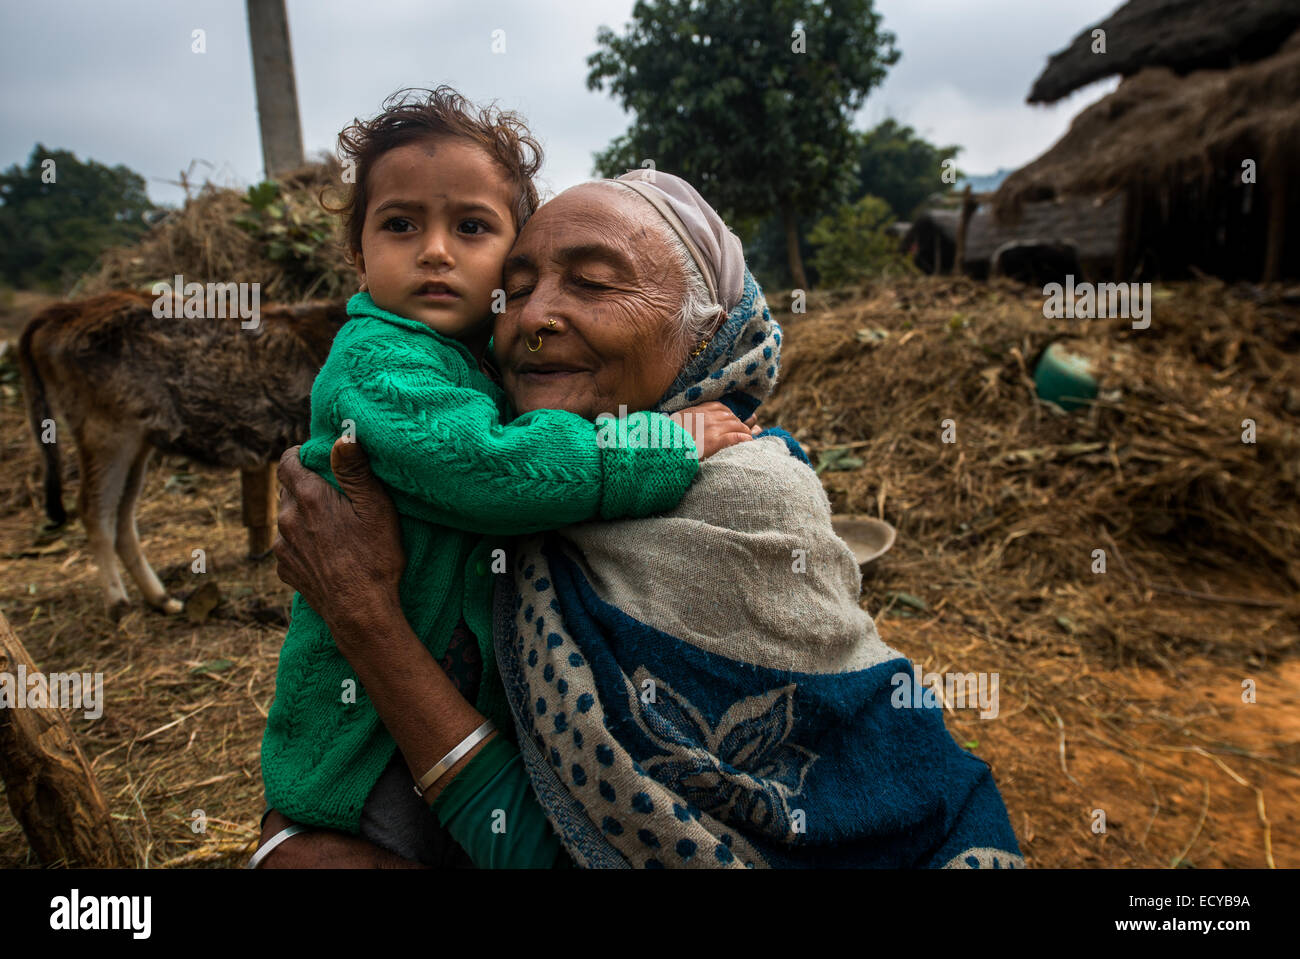 Grand-mère et petite-fille de village népalais, de l'Ouest, le Népal Terai Banque D'Images